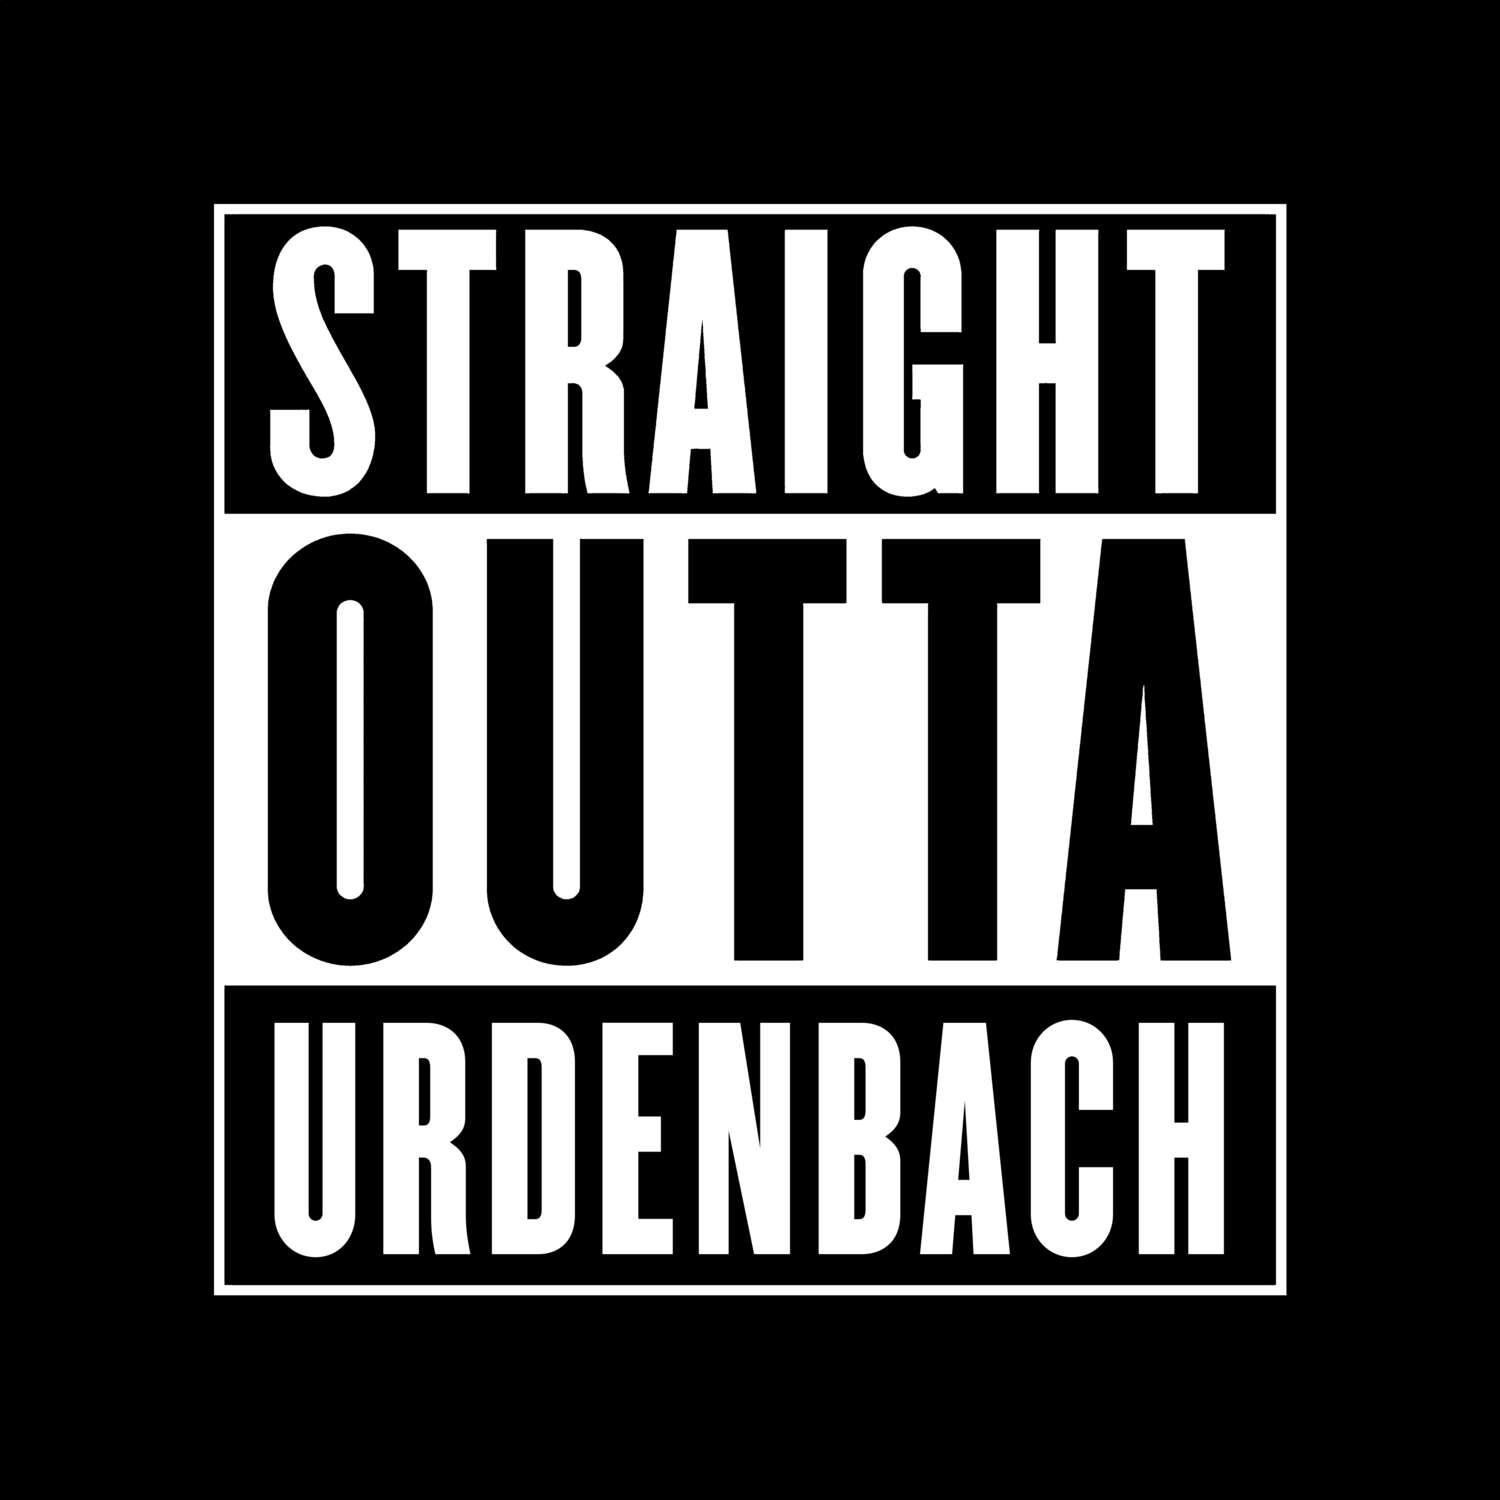 Urdenbach T-Shirt »Straight Outta«